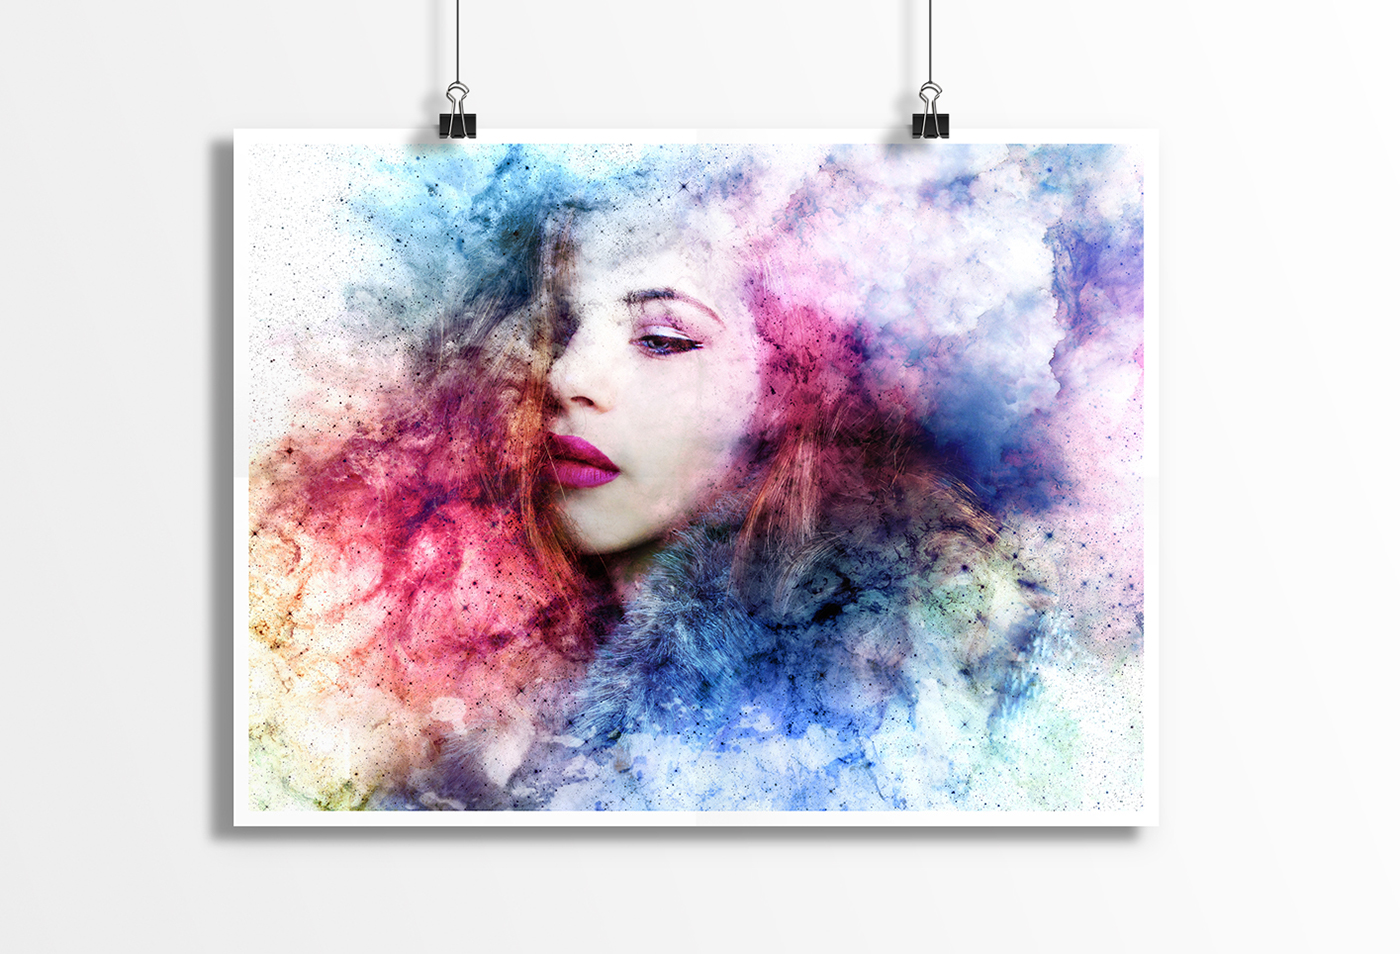 celest divine divinity composition new wallpaper background woman portrait watercolor